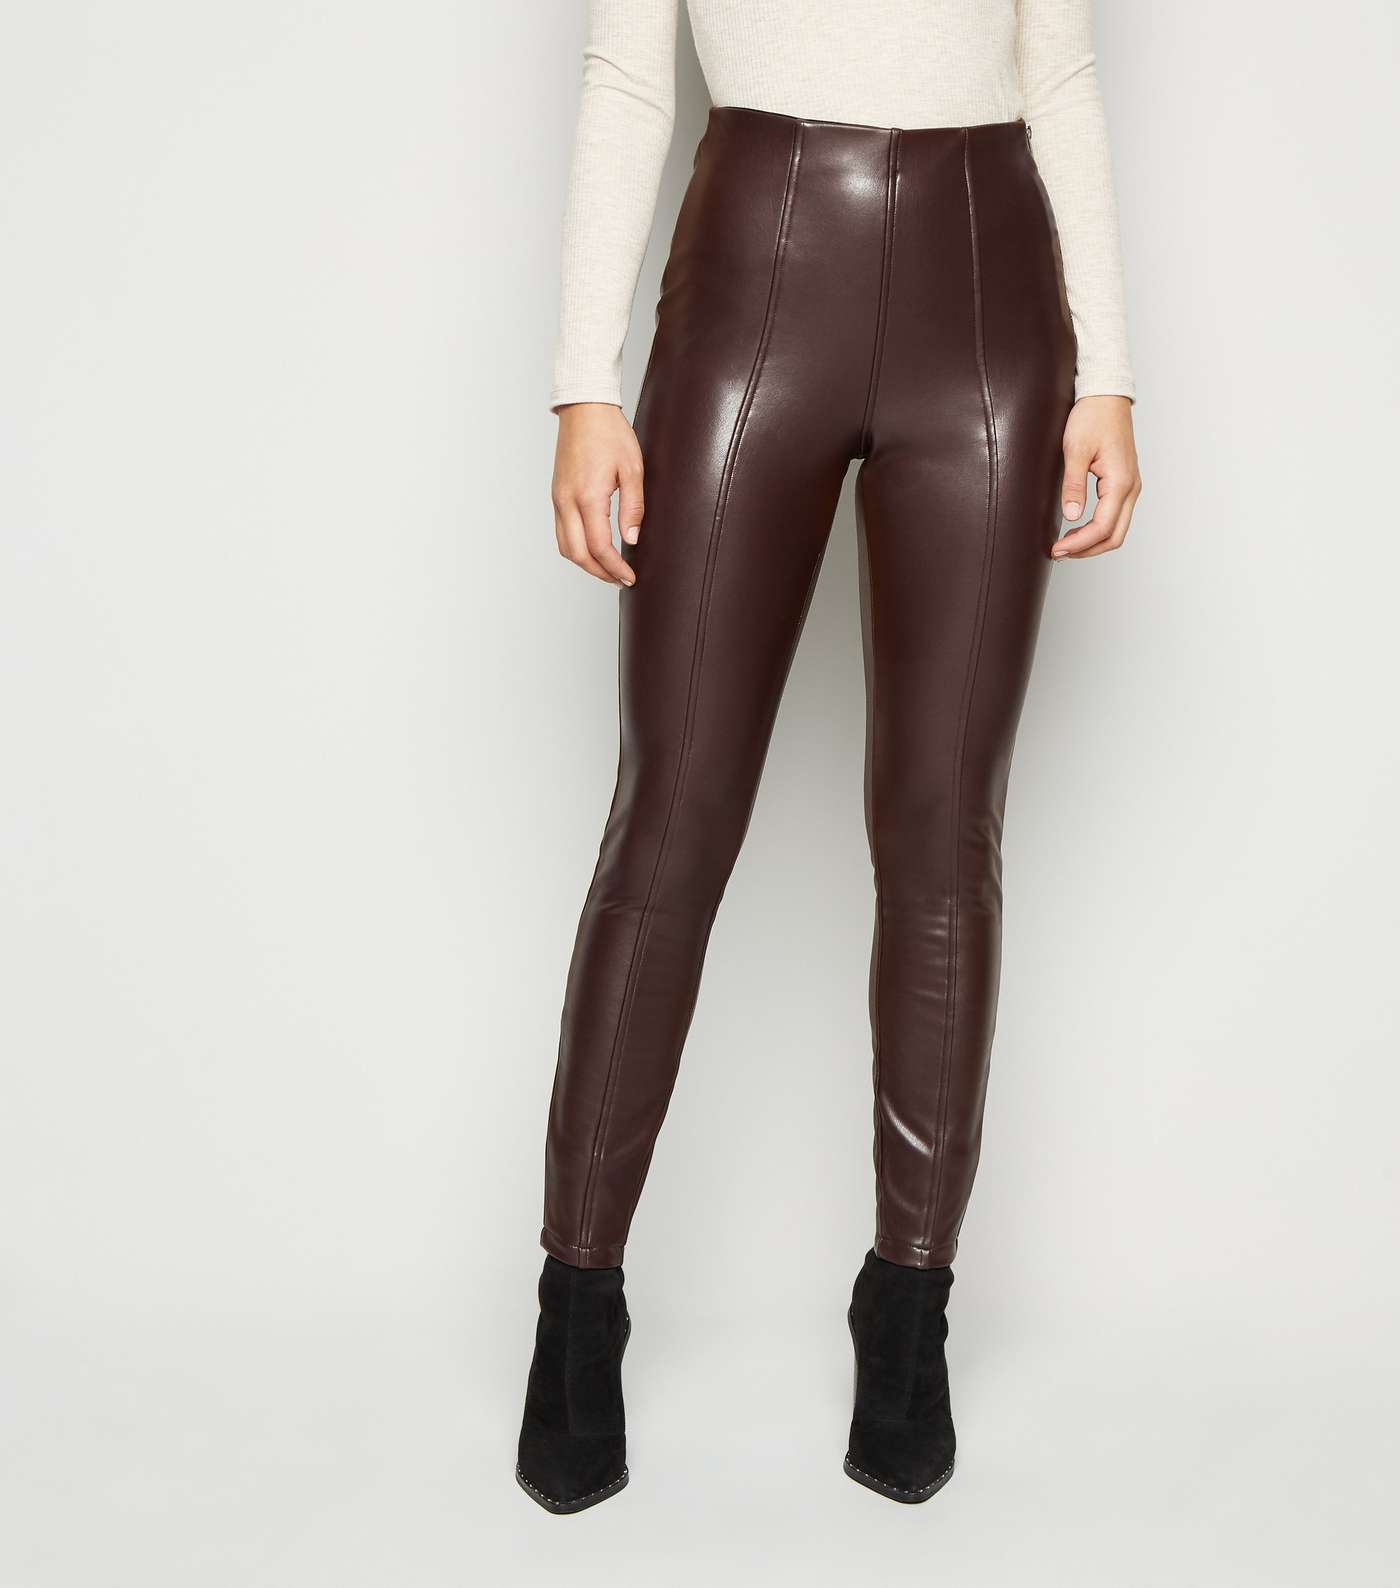 Brown Coated Leather-Look Leggings Image 2